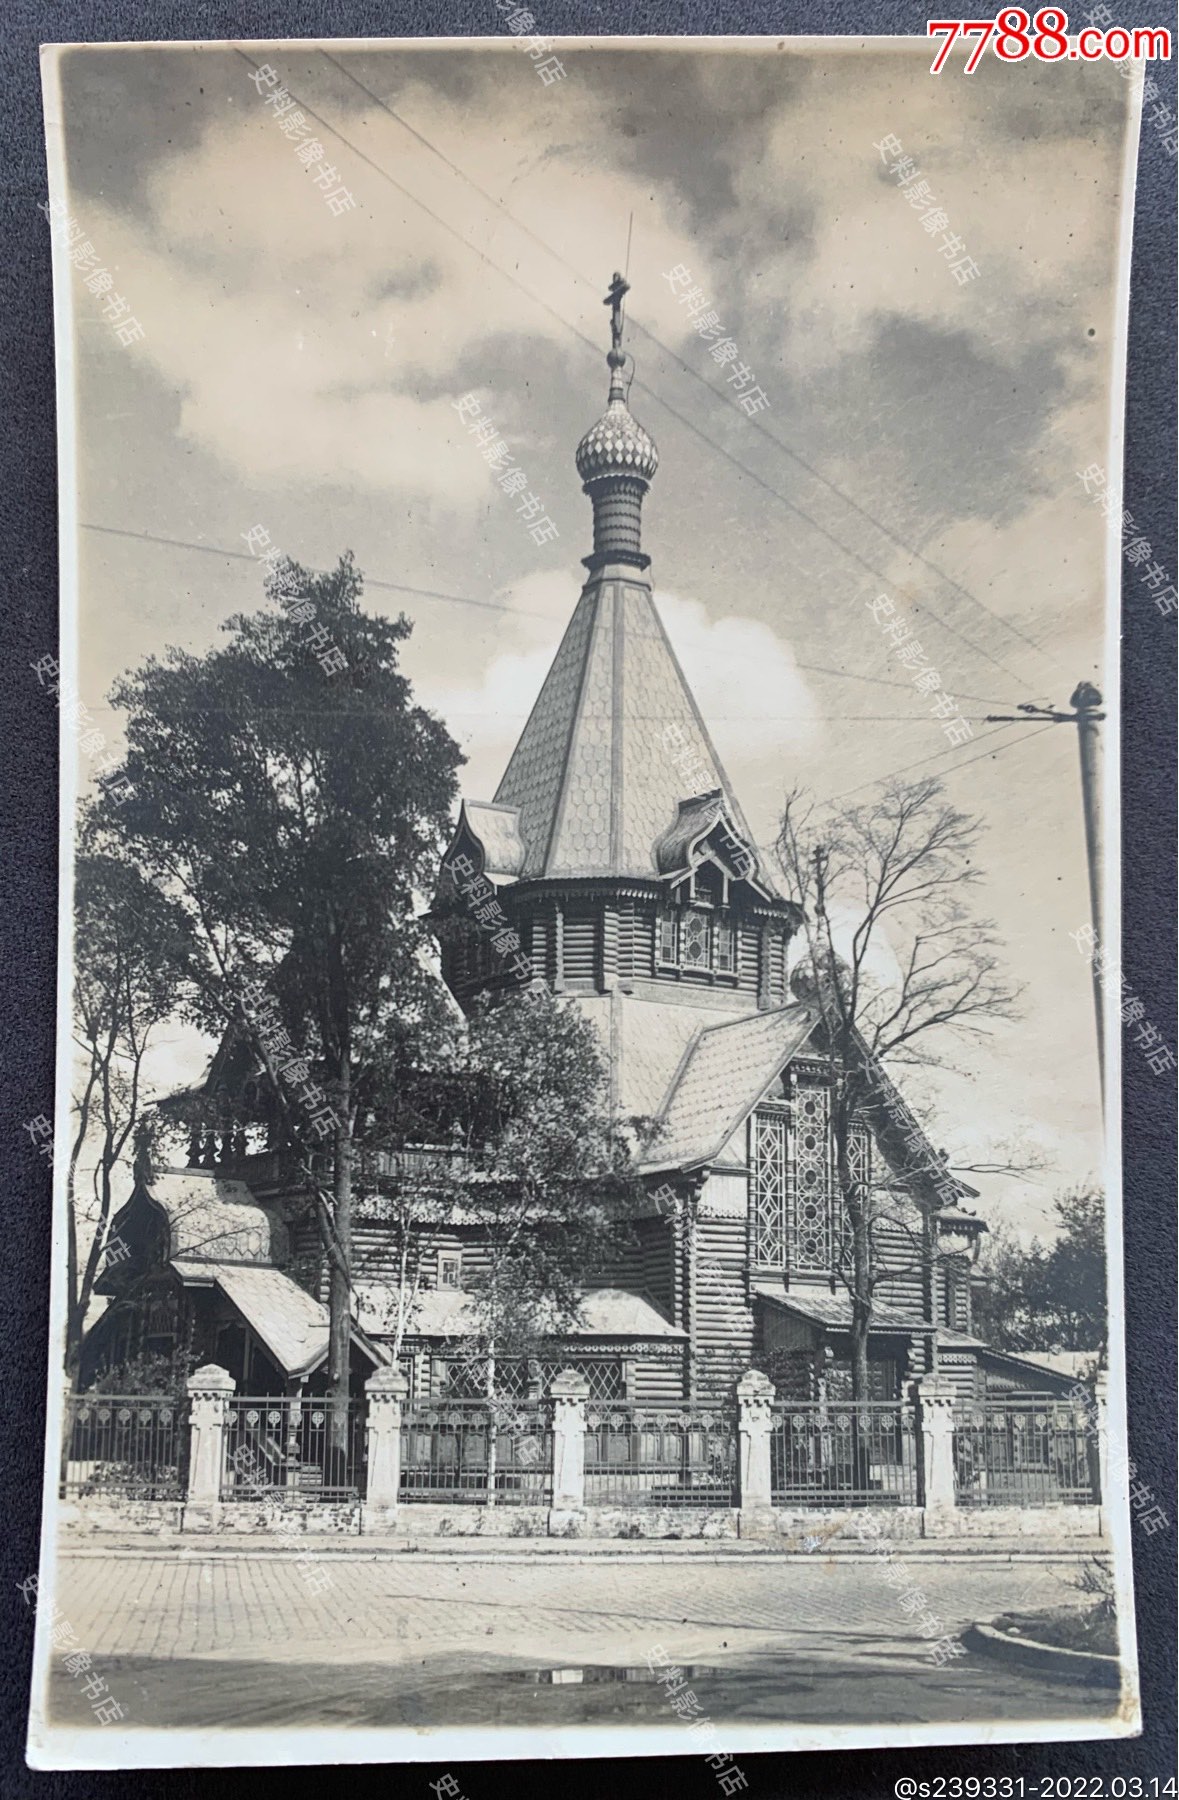 【哈尔滨旧影】伪满洲国时期哈尔滨圣·尼古拉教堂泛银老照片一枚